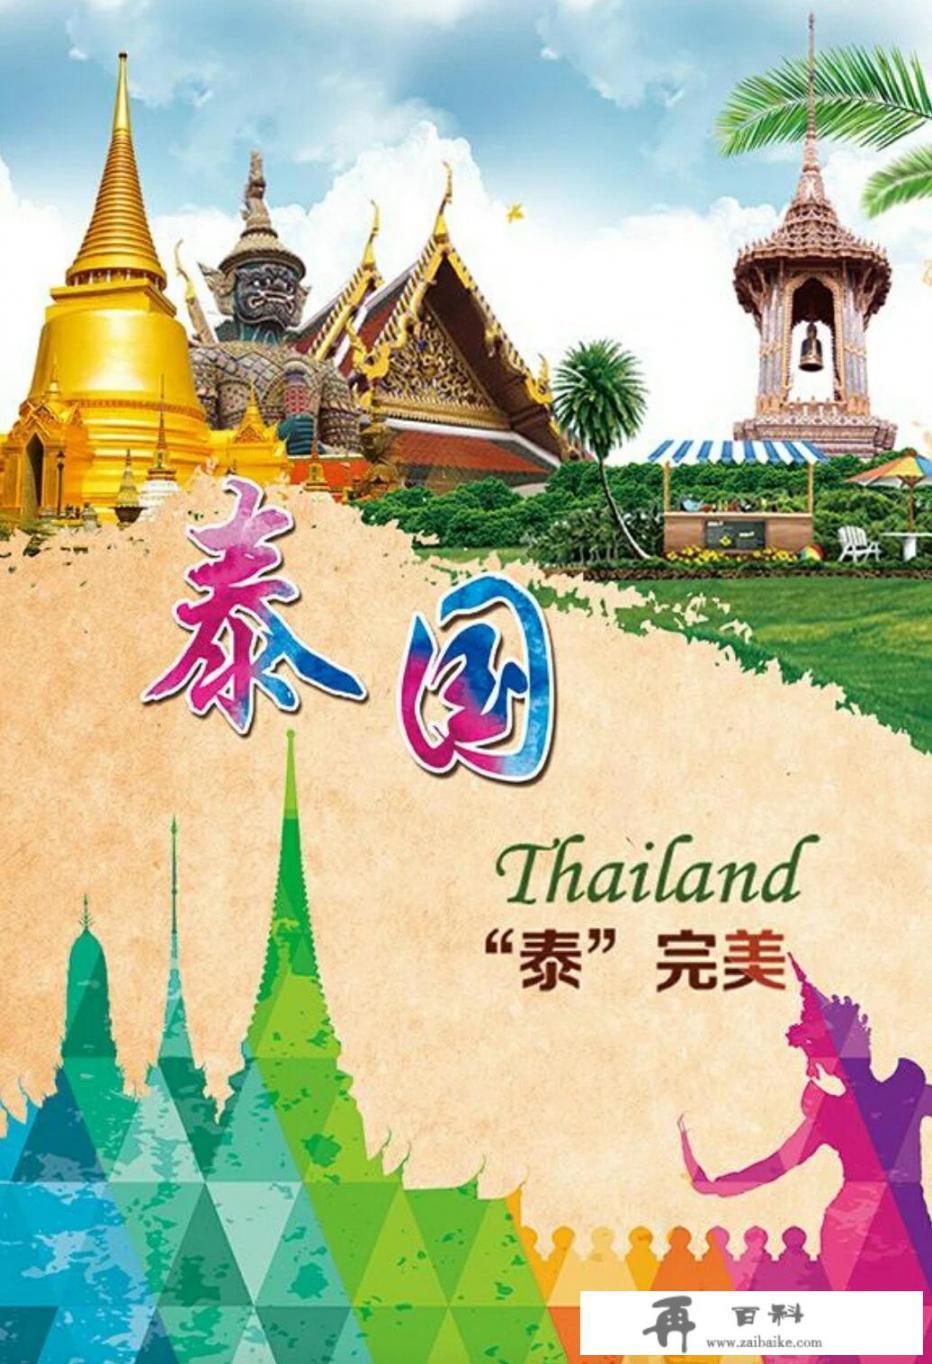 我驻泰使馆提醒：春节赴泰国旅游注意安全。去泰国旅游过年的人会不会减少